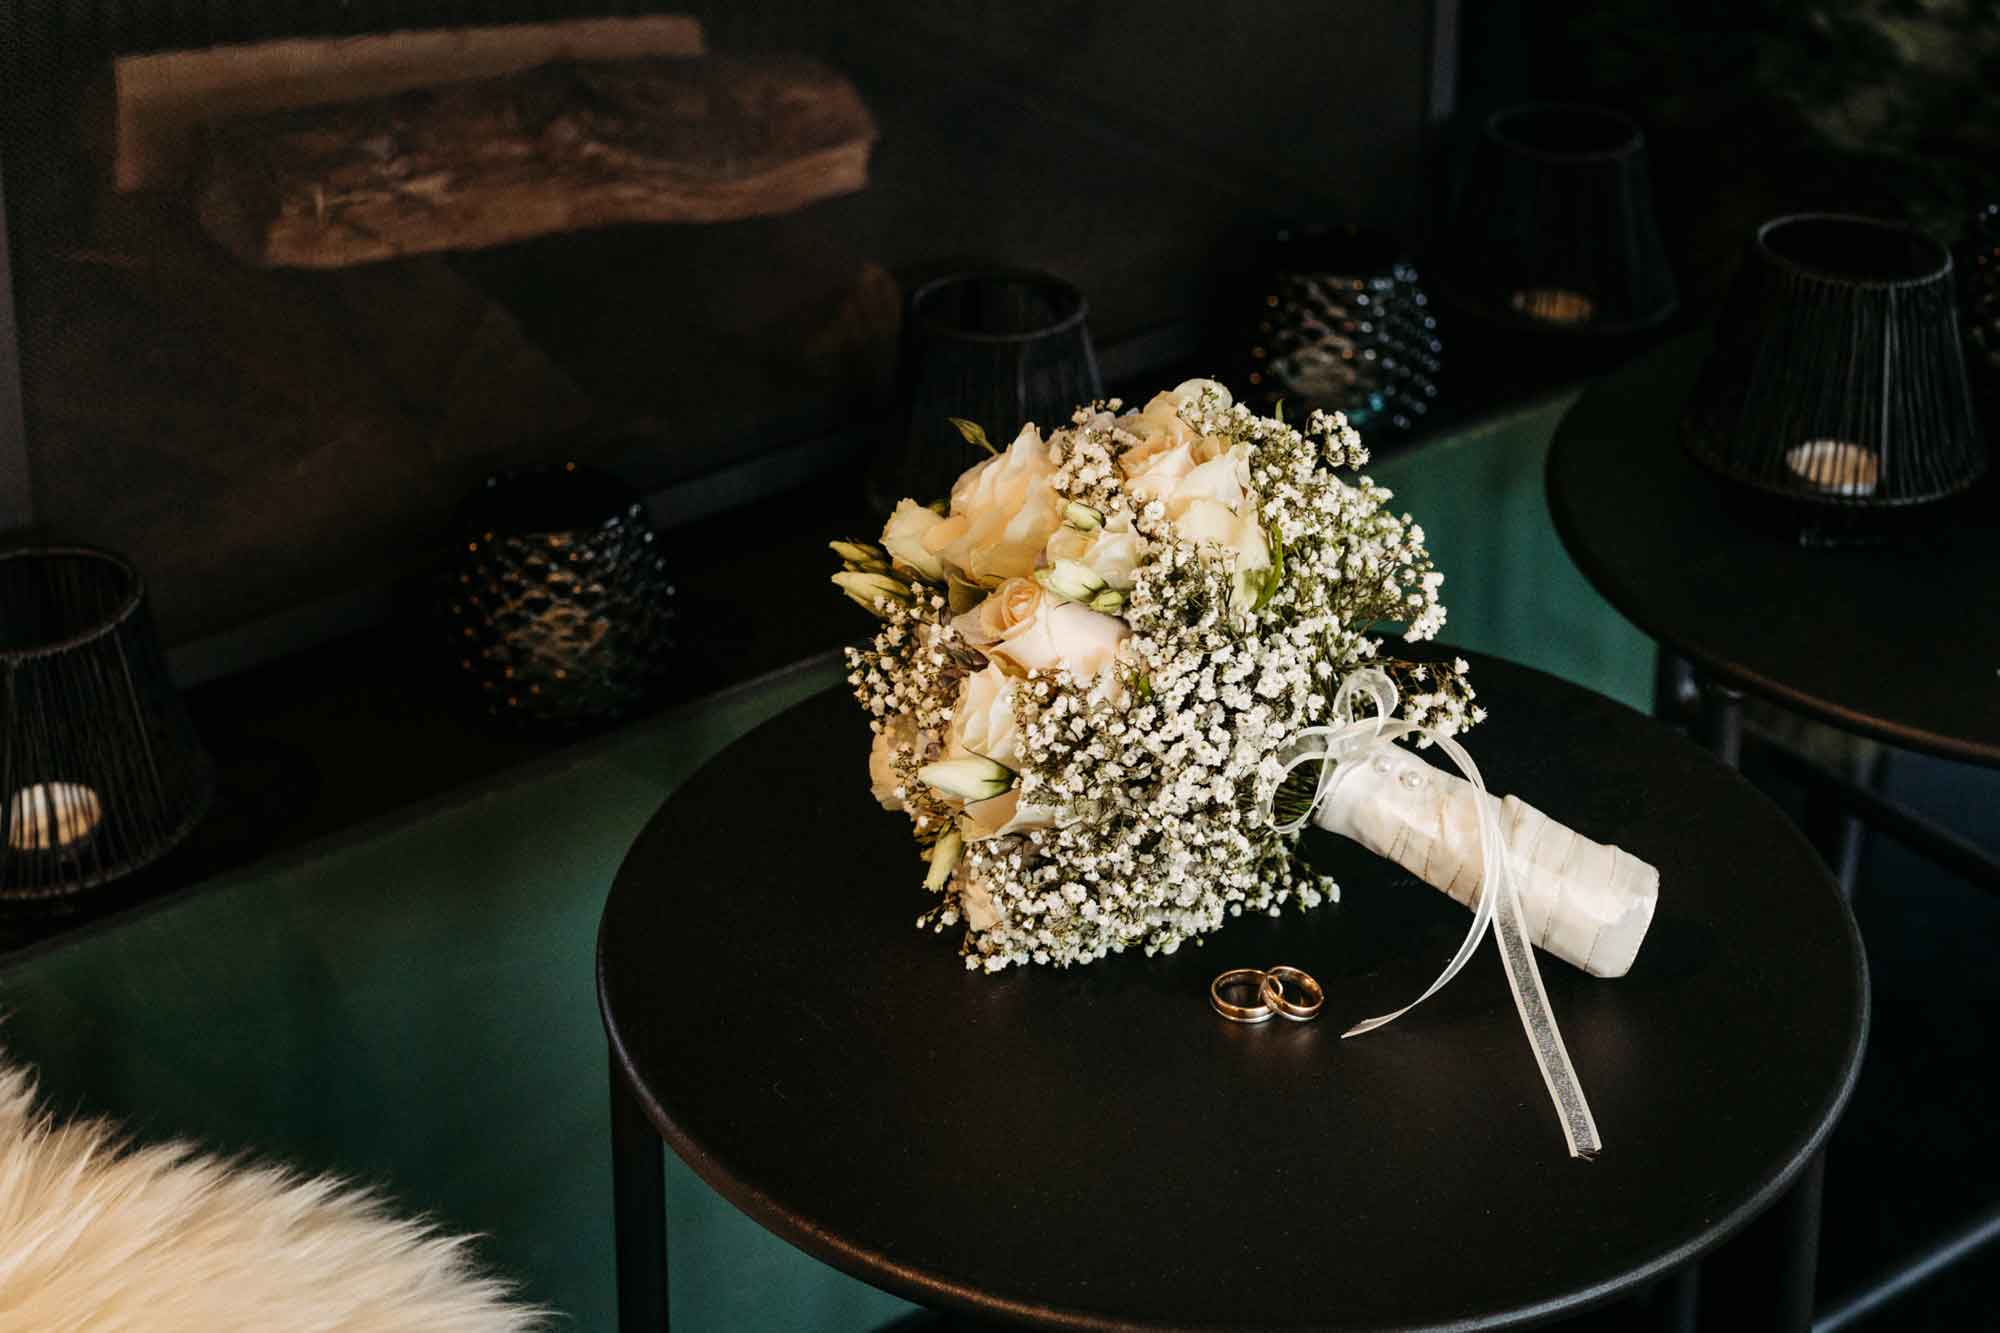 Der Brautstrauss liegt auf dem Tisch vor dem Kamin. Die Traunringe liegen vor dem Brautstrauss.